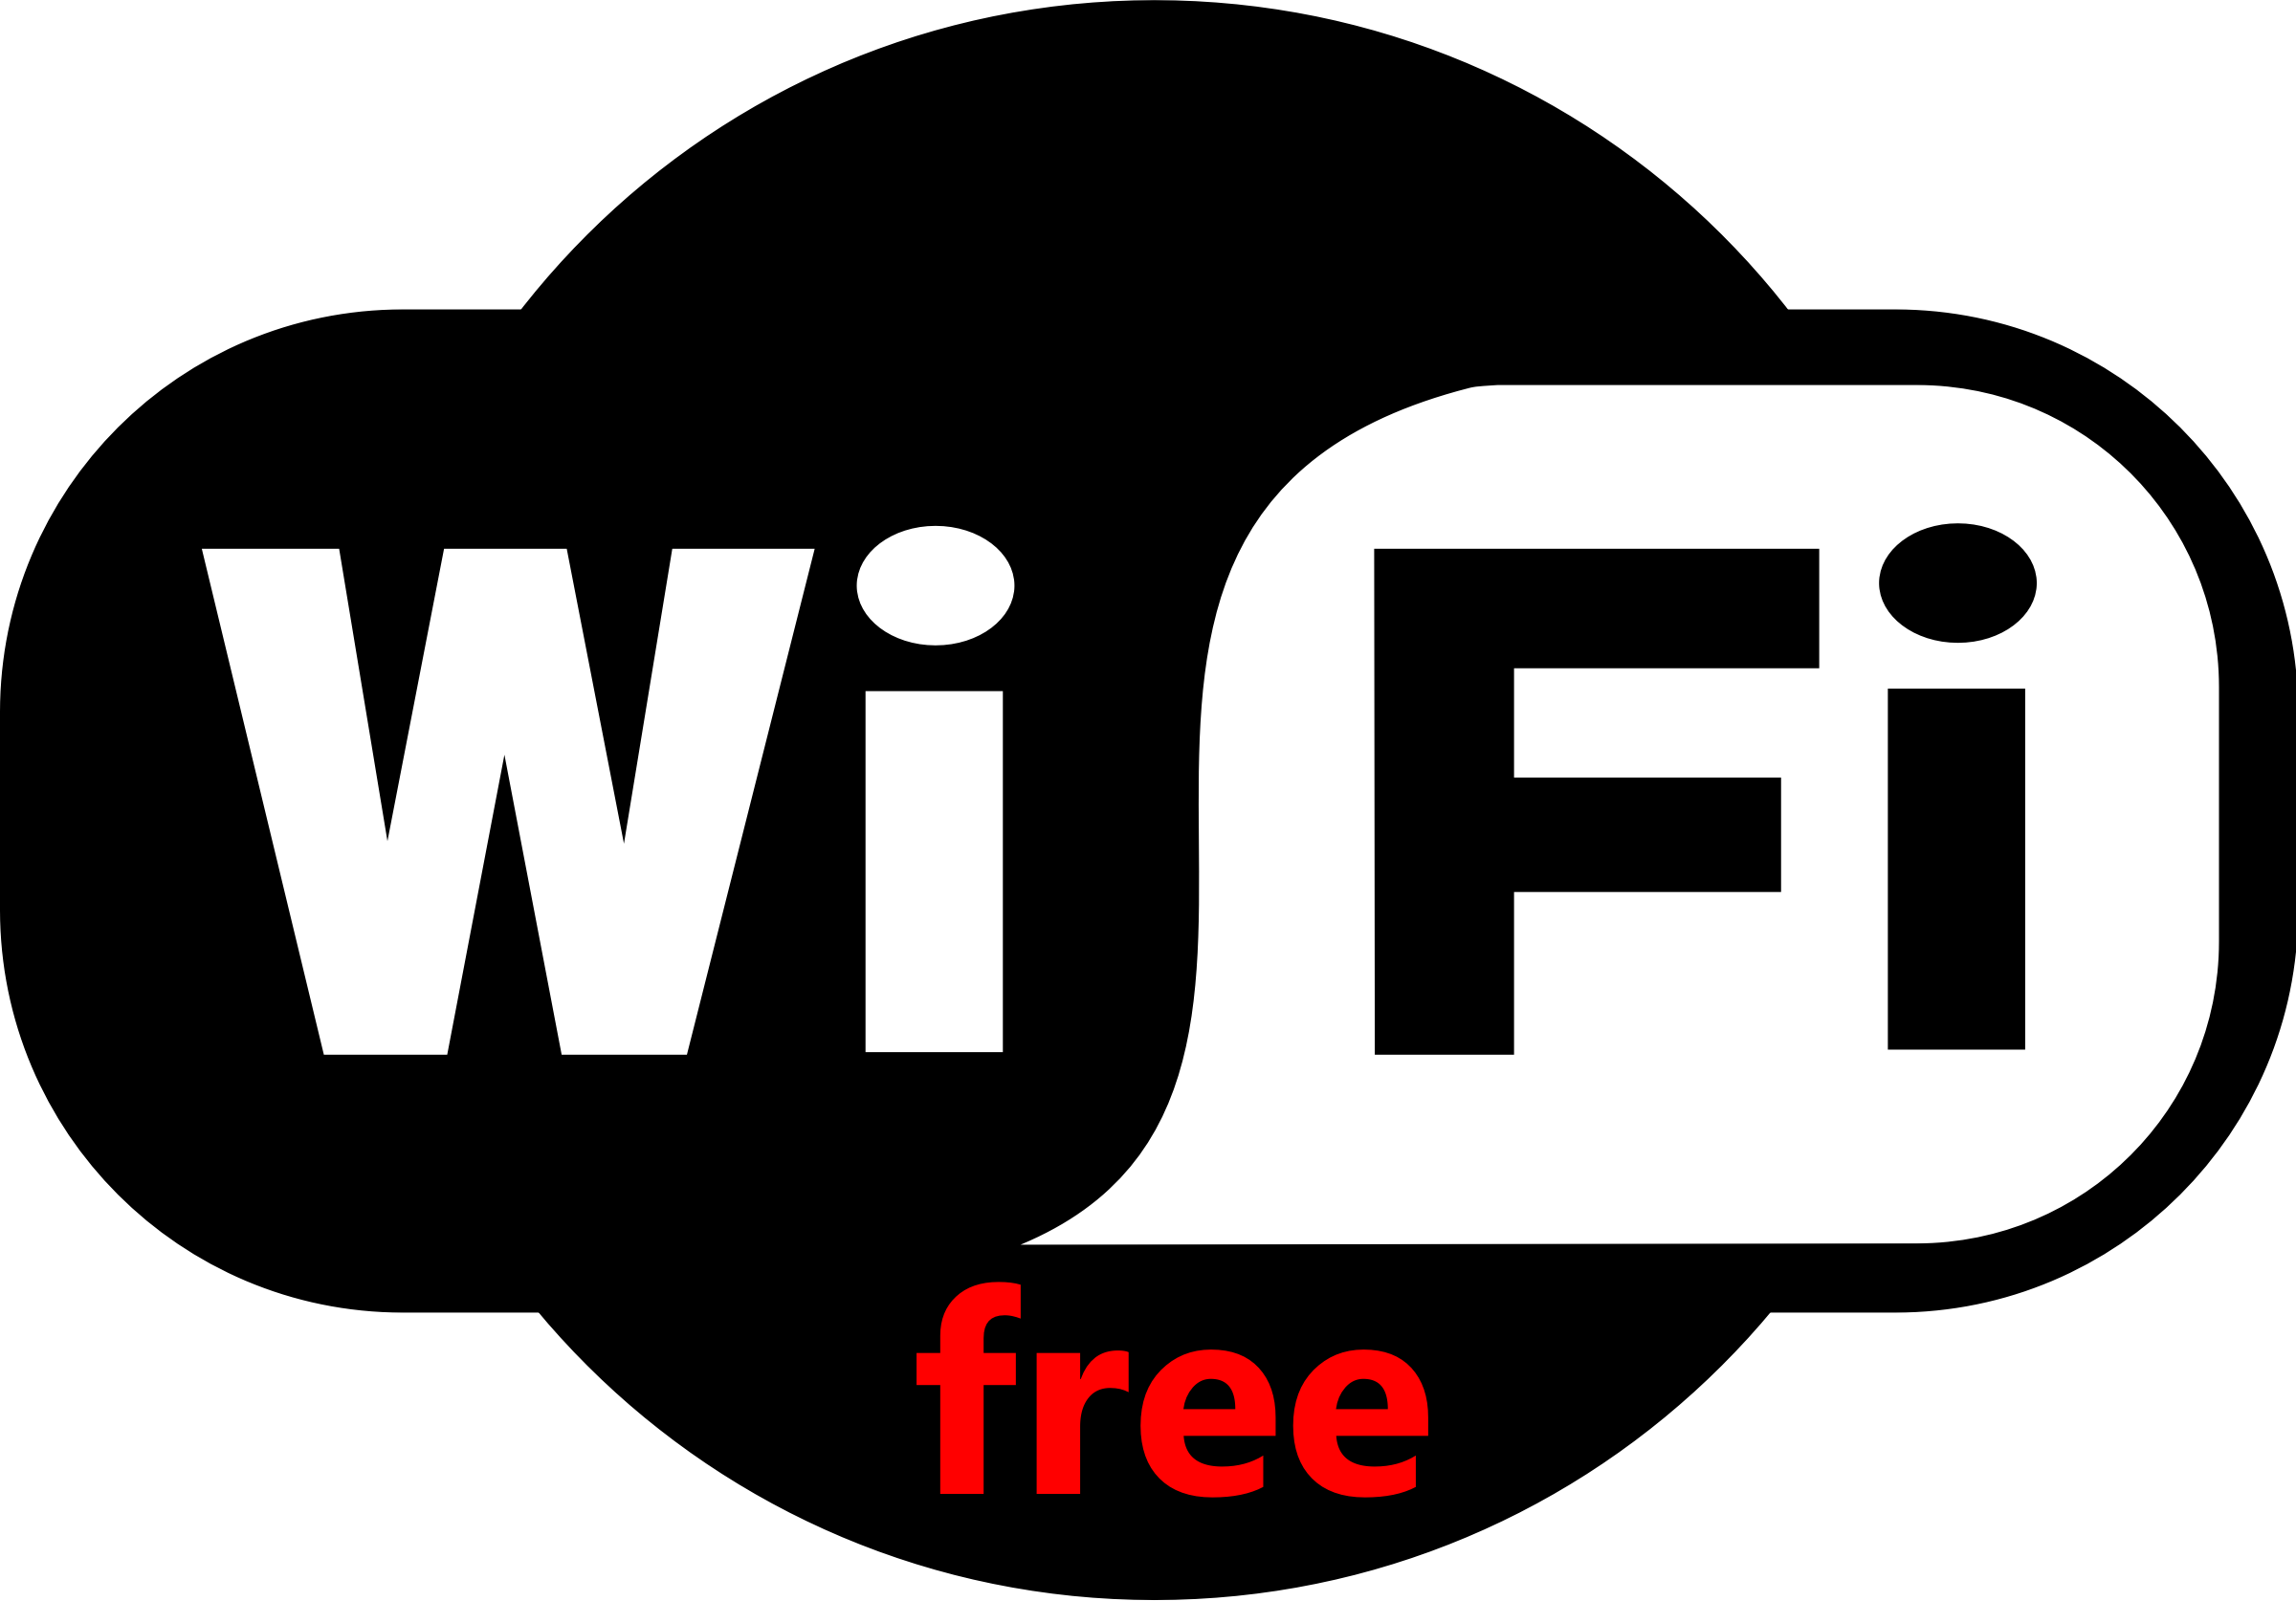 WiFi gratuit PNG Image HQ